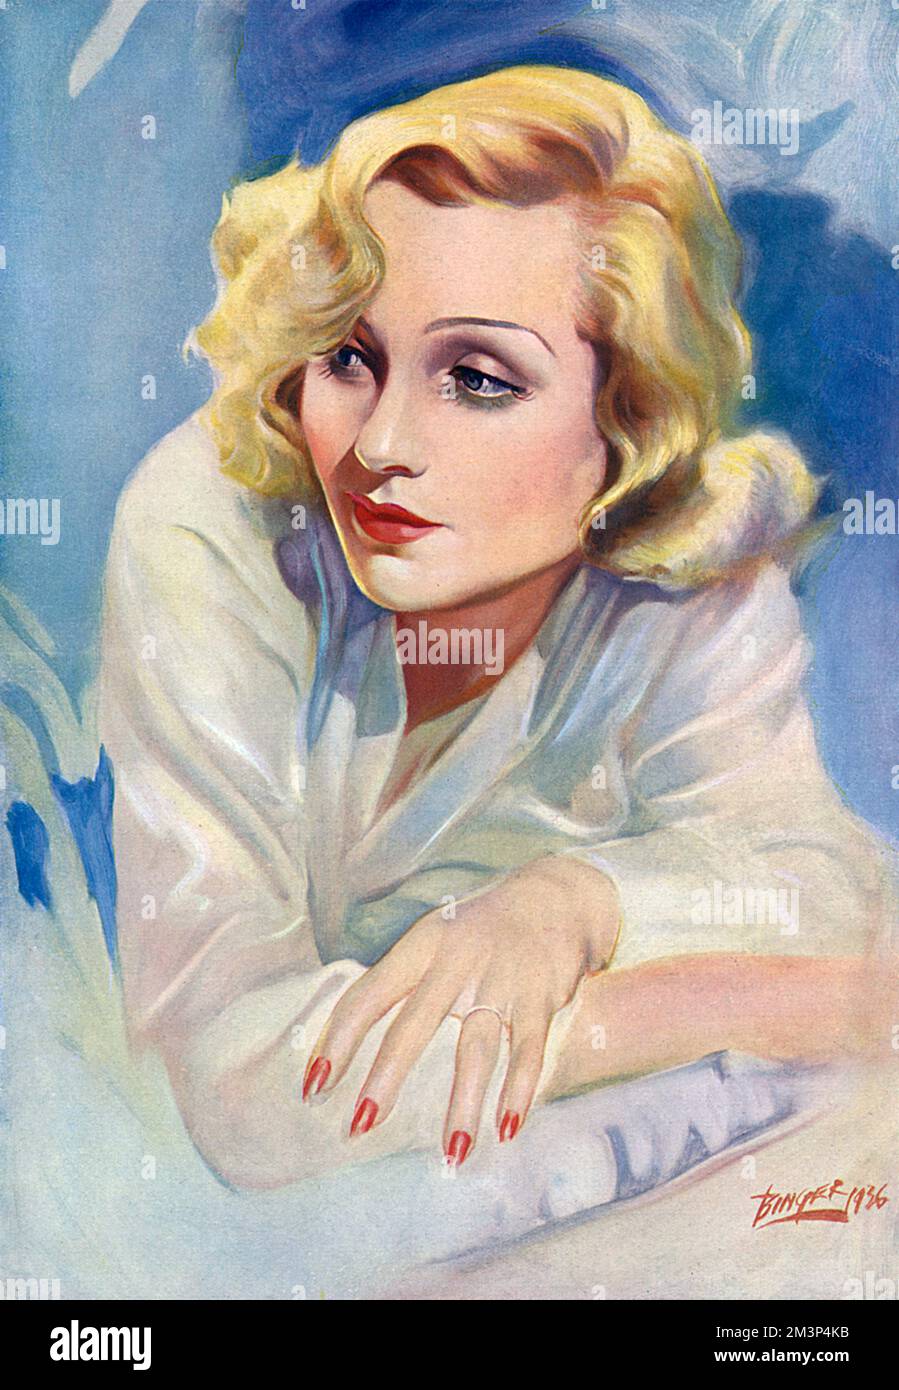 Carole Lombard (1908 - 1942), amerikanische Schauspielerin, die zu der Zeit die Rolle von Maggie King im Paramount-Film Swing High, Swing Low spielte. Datum: 1937 Stockfoto